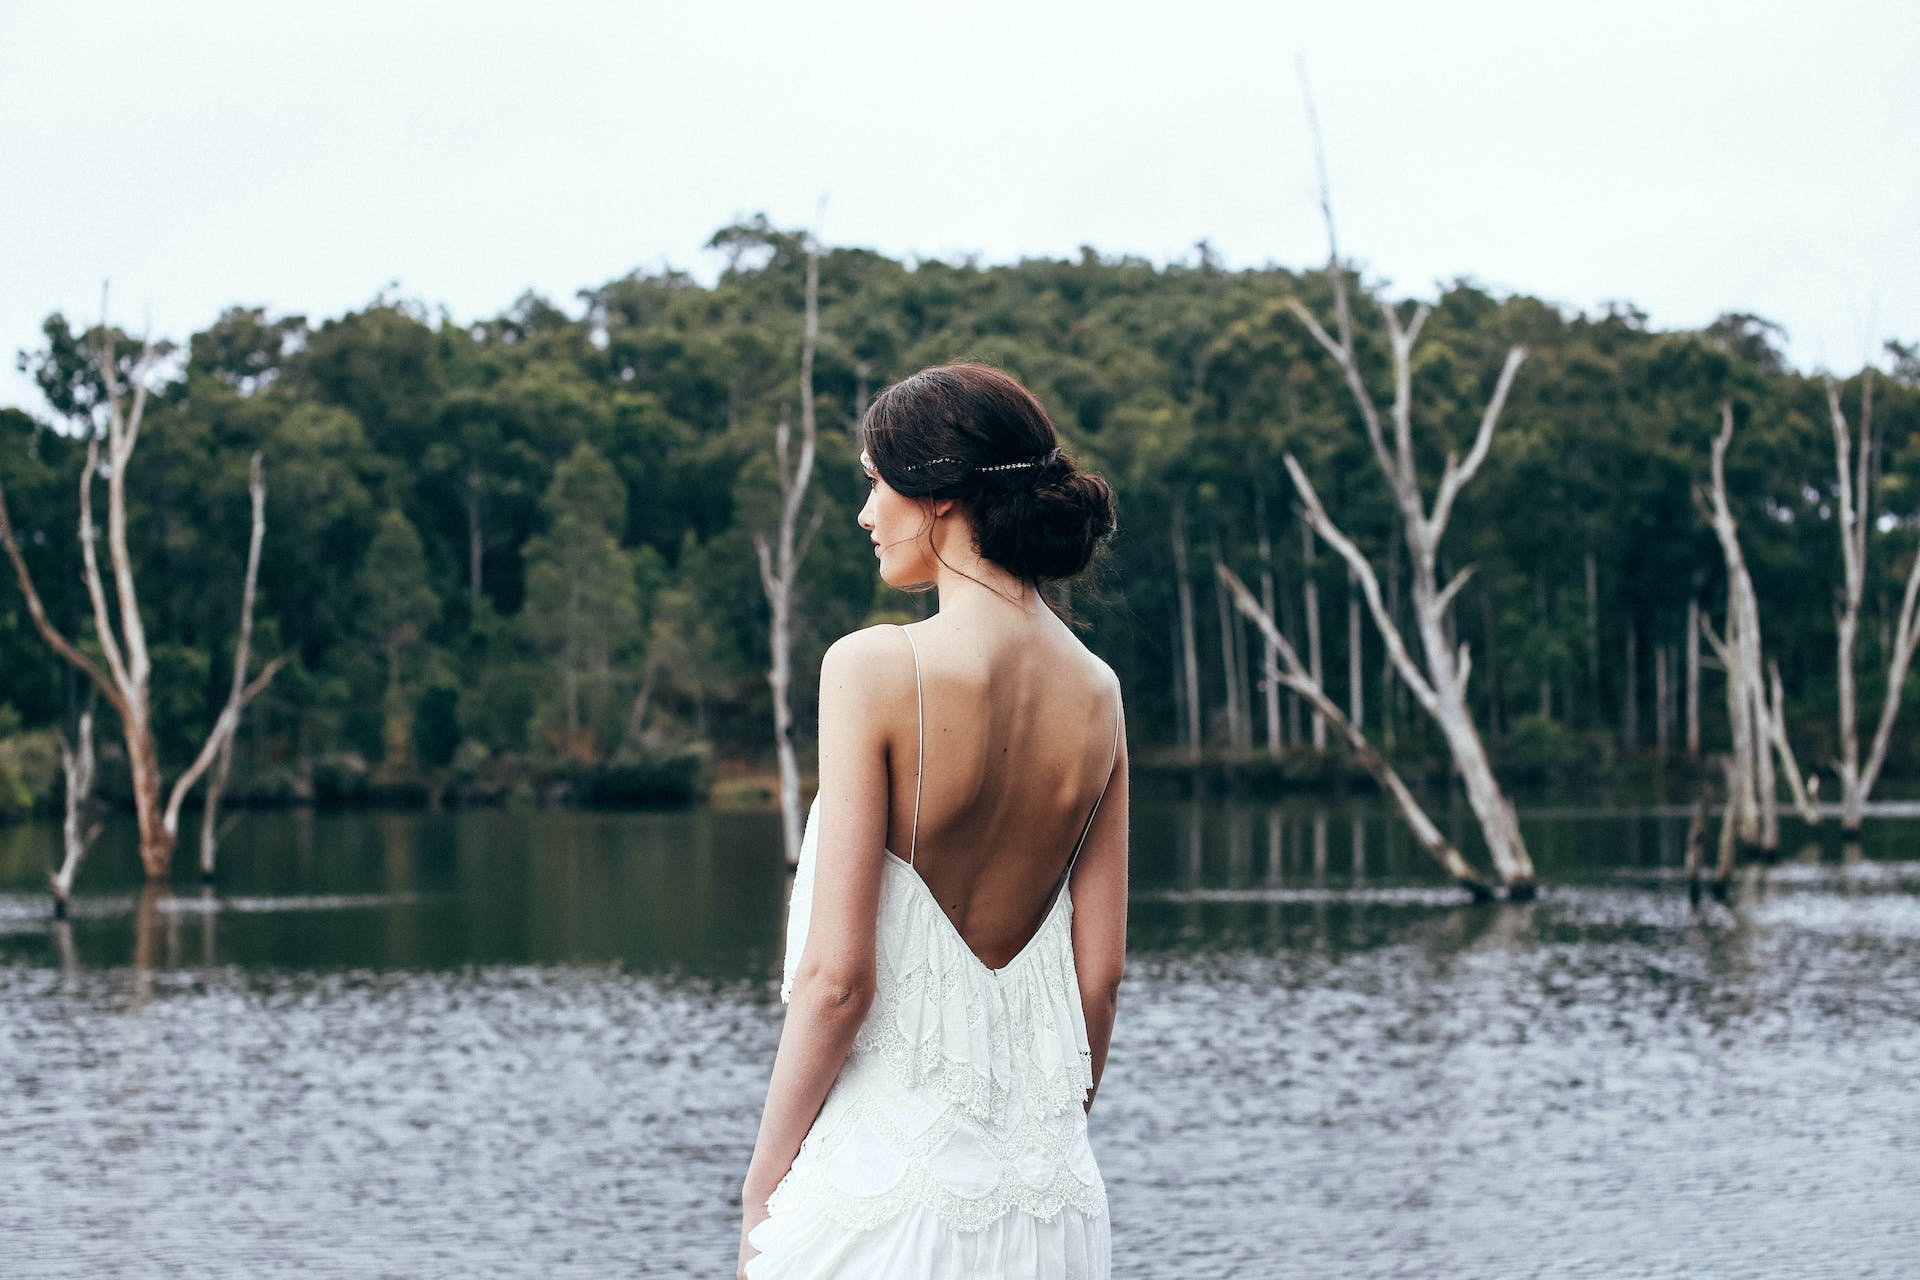 Una novia de pie cerca de un lago | Fuente: Pexels